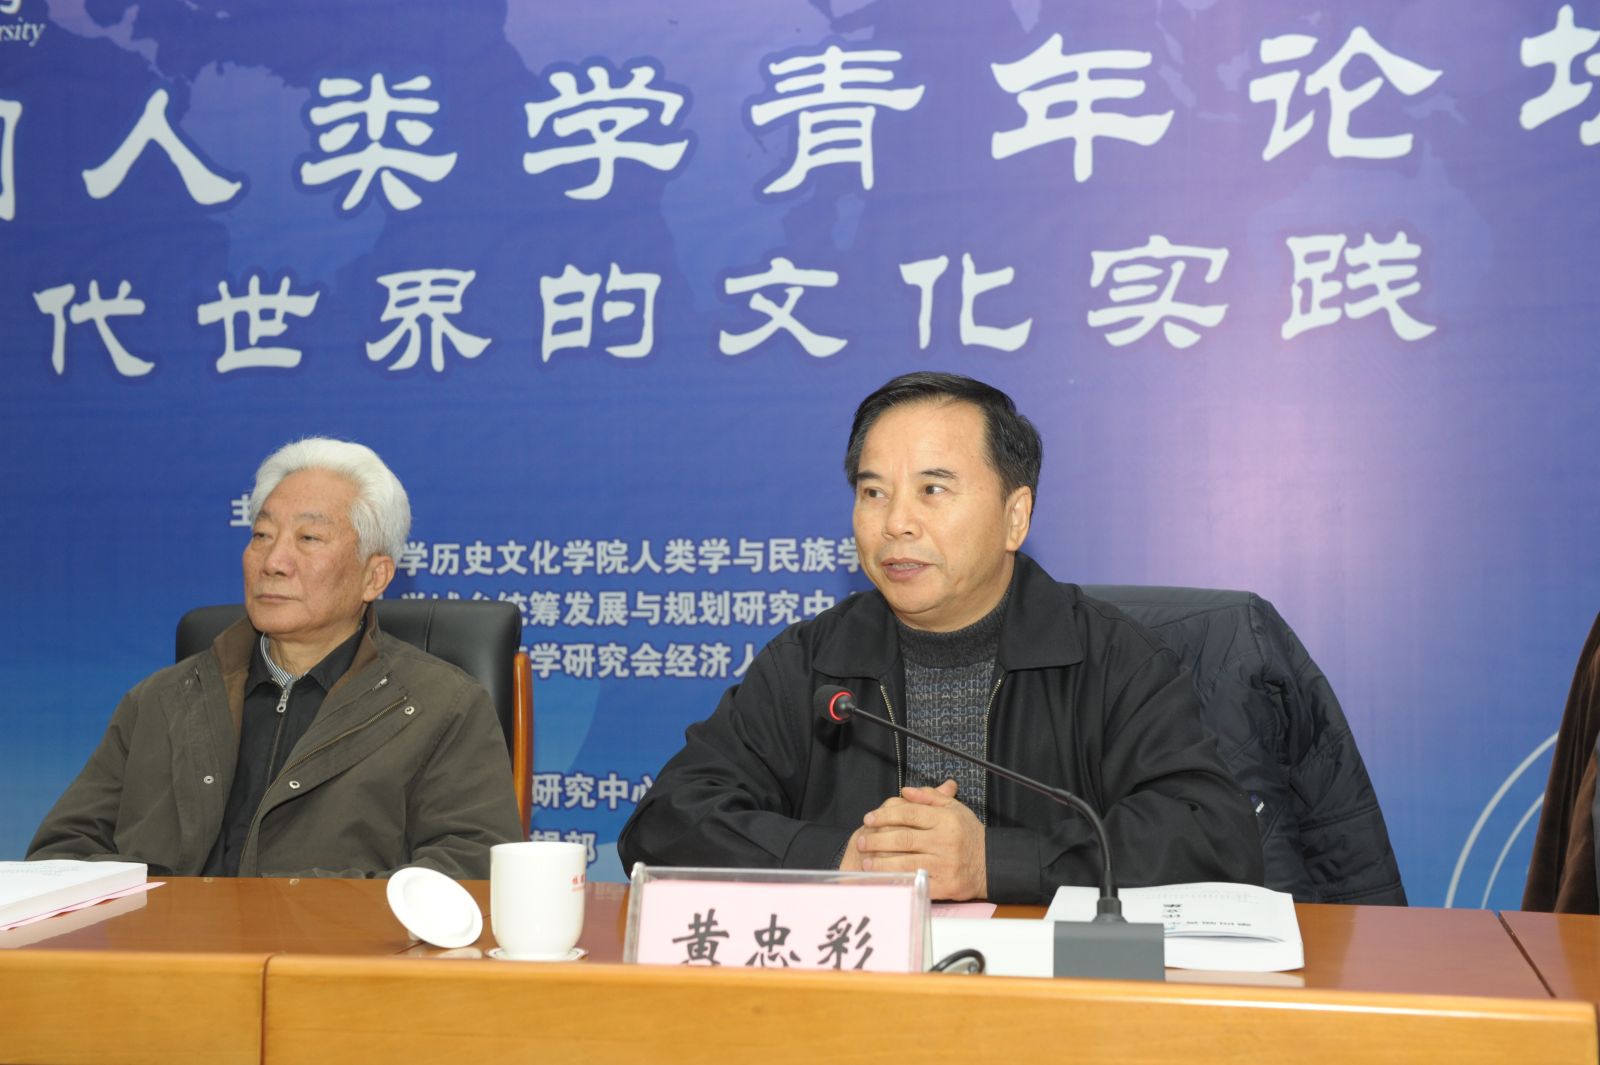 中国人类学民族学研究会秘书长黄忠彩介绍了青年人类学家培养的三个方向